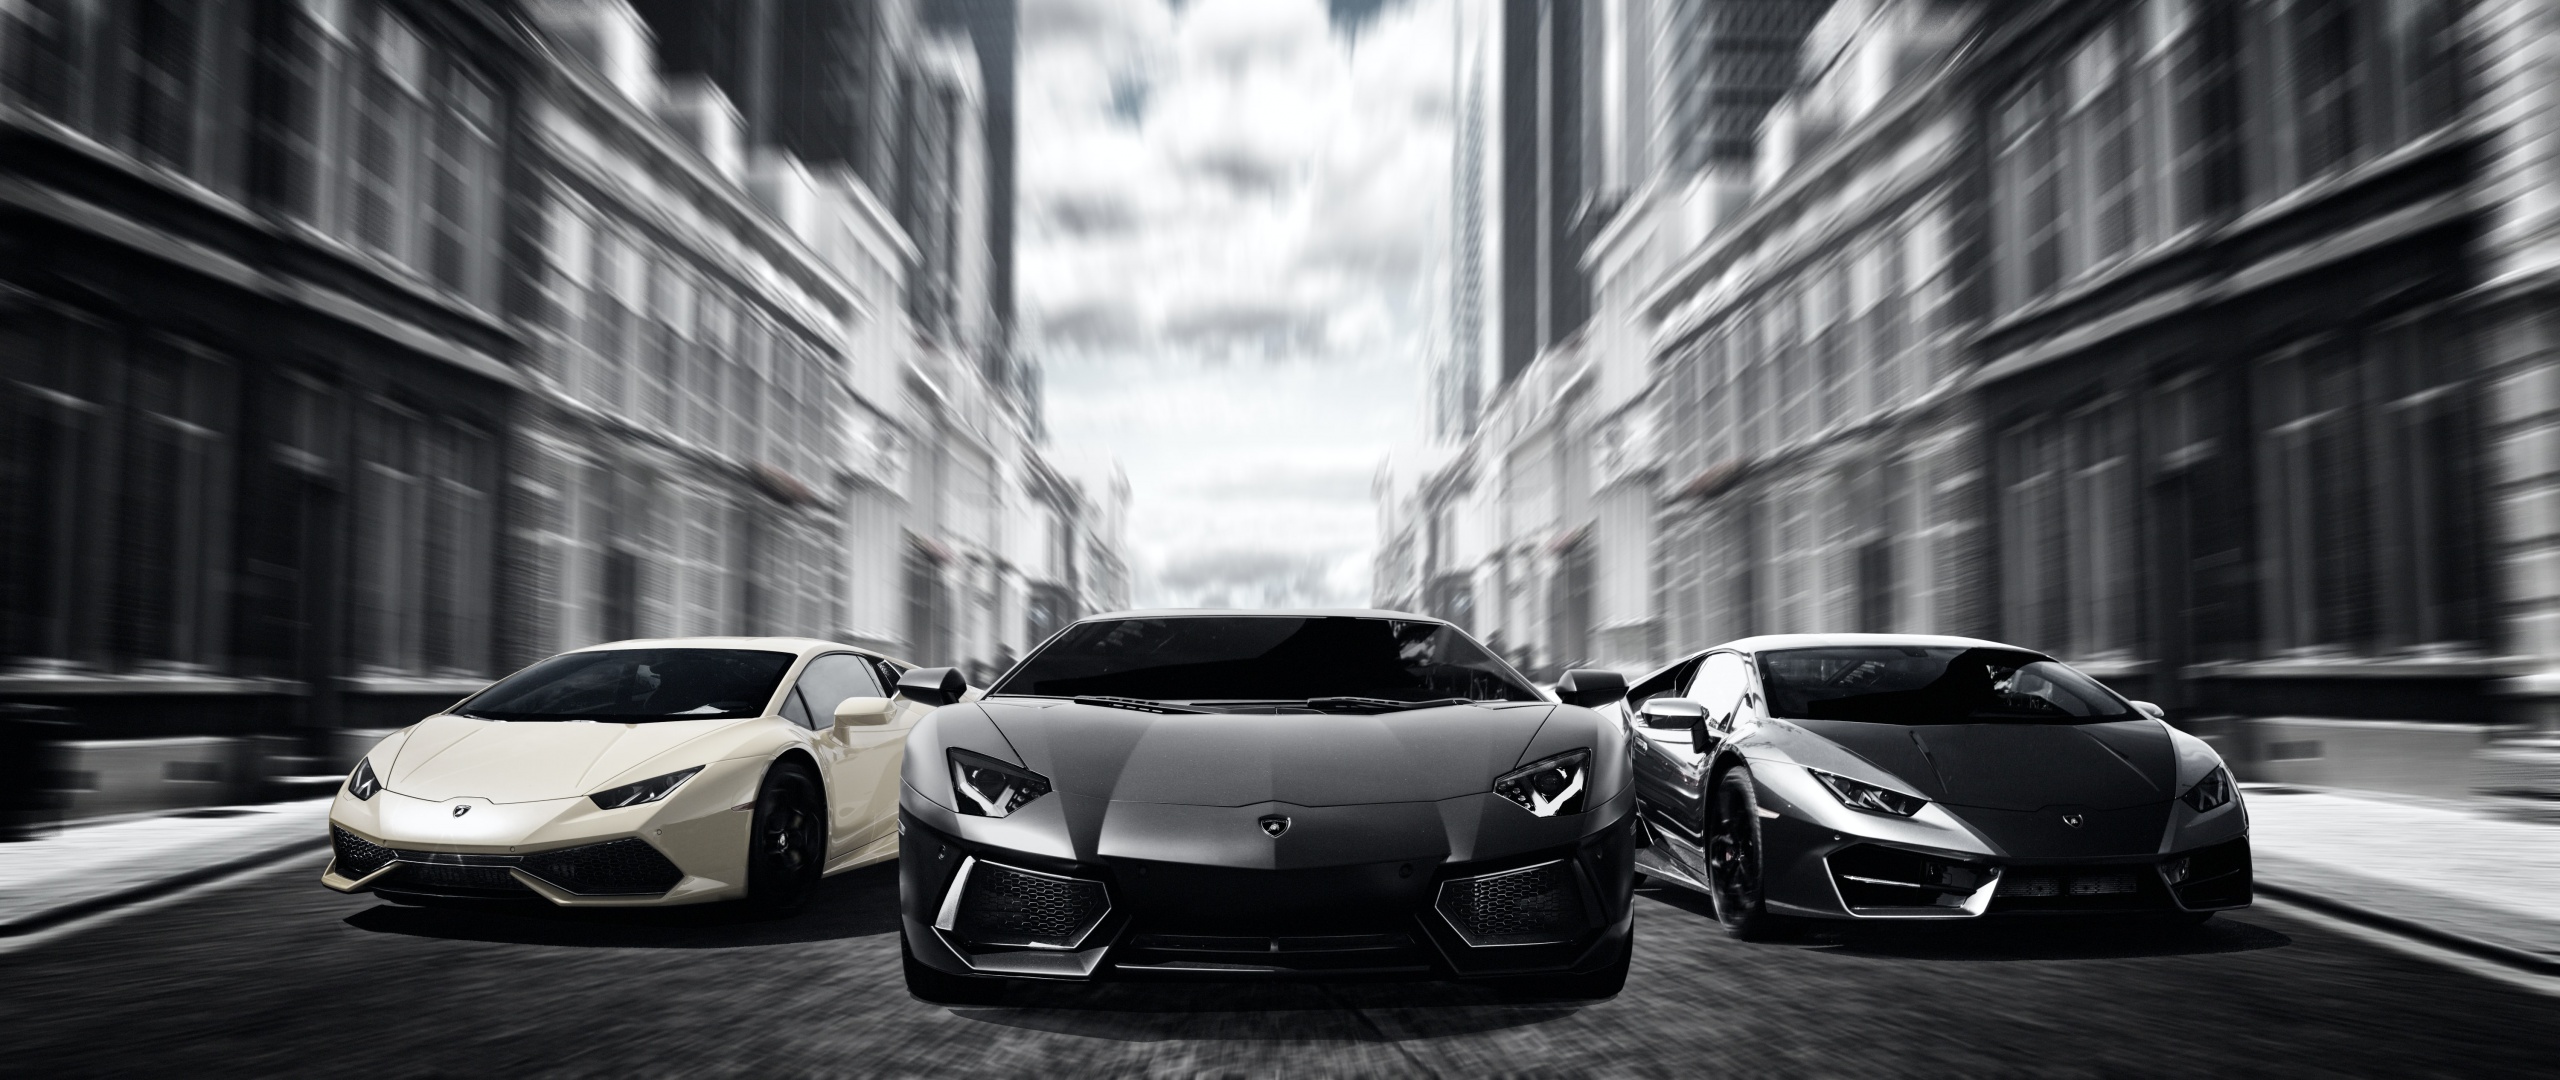 Lamborghini Cars Wallpaper 4K, Sports